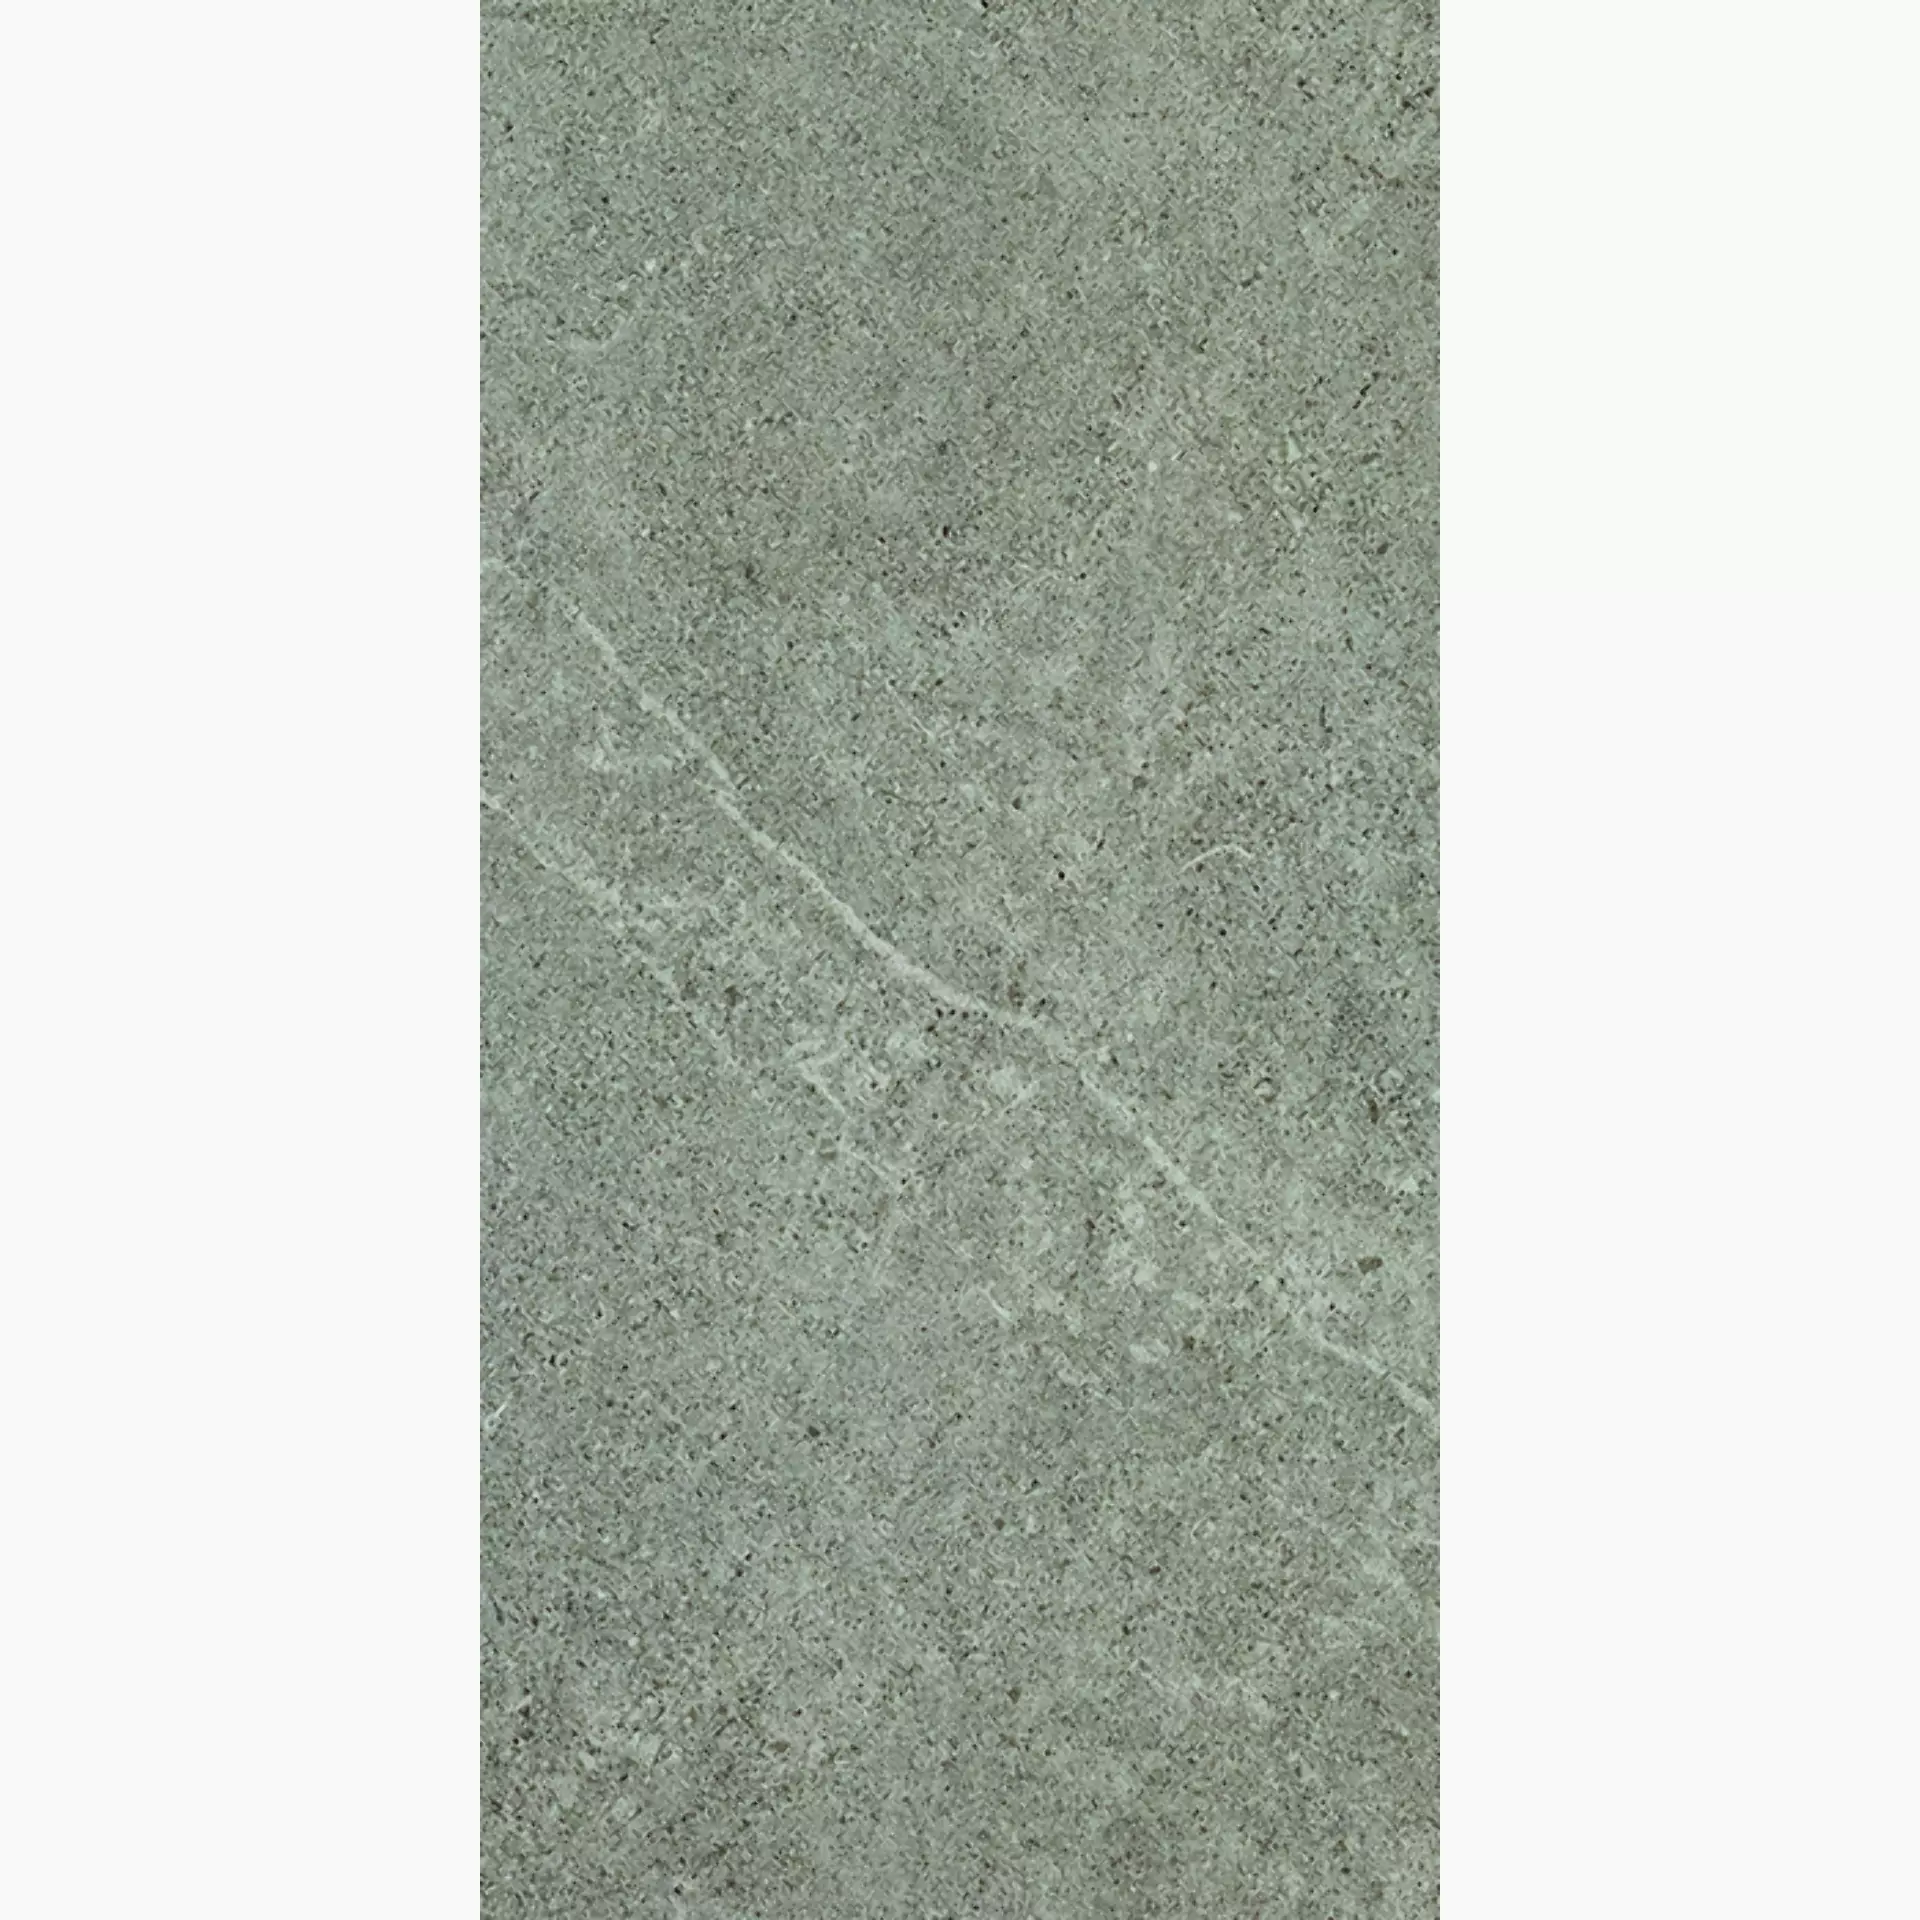 Cercom Archistone Grey Antislip 1082618 30x60cm rectified 9,5mm